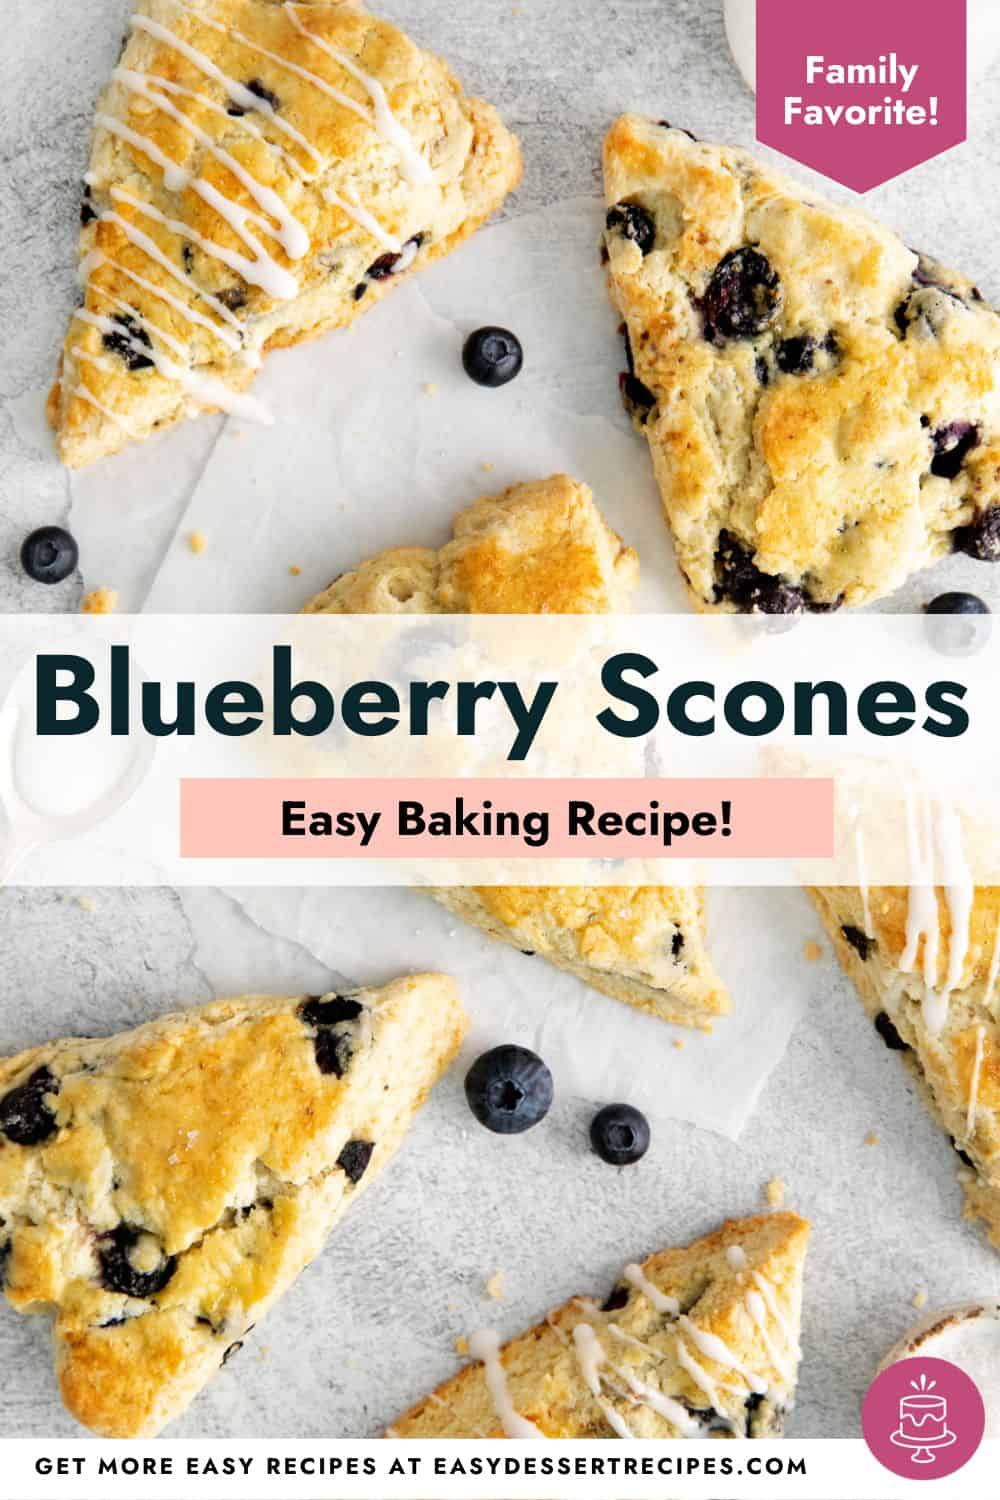 Blueberry scones easy baking recipe.